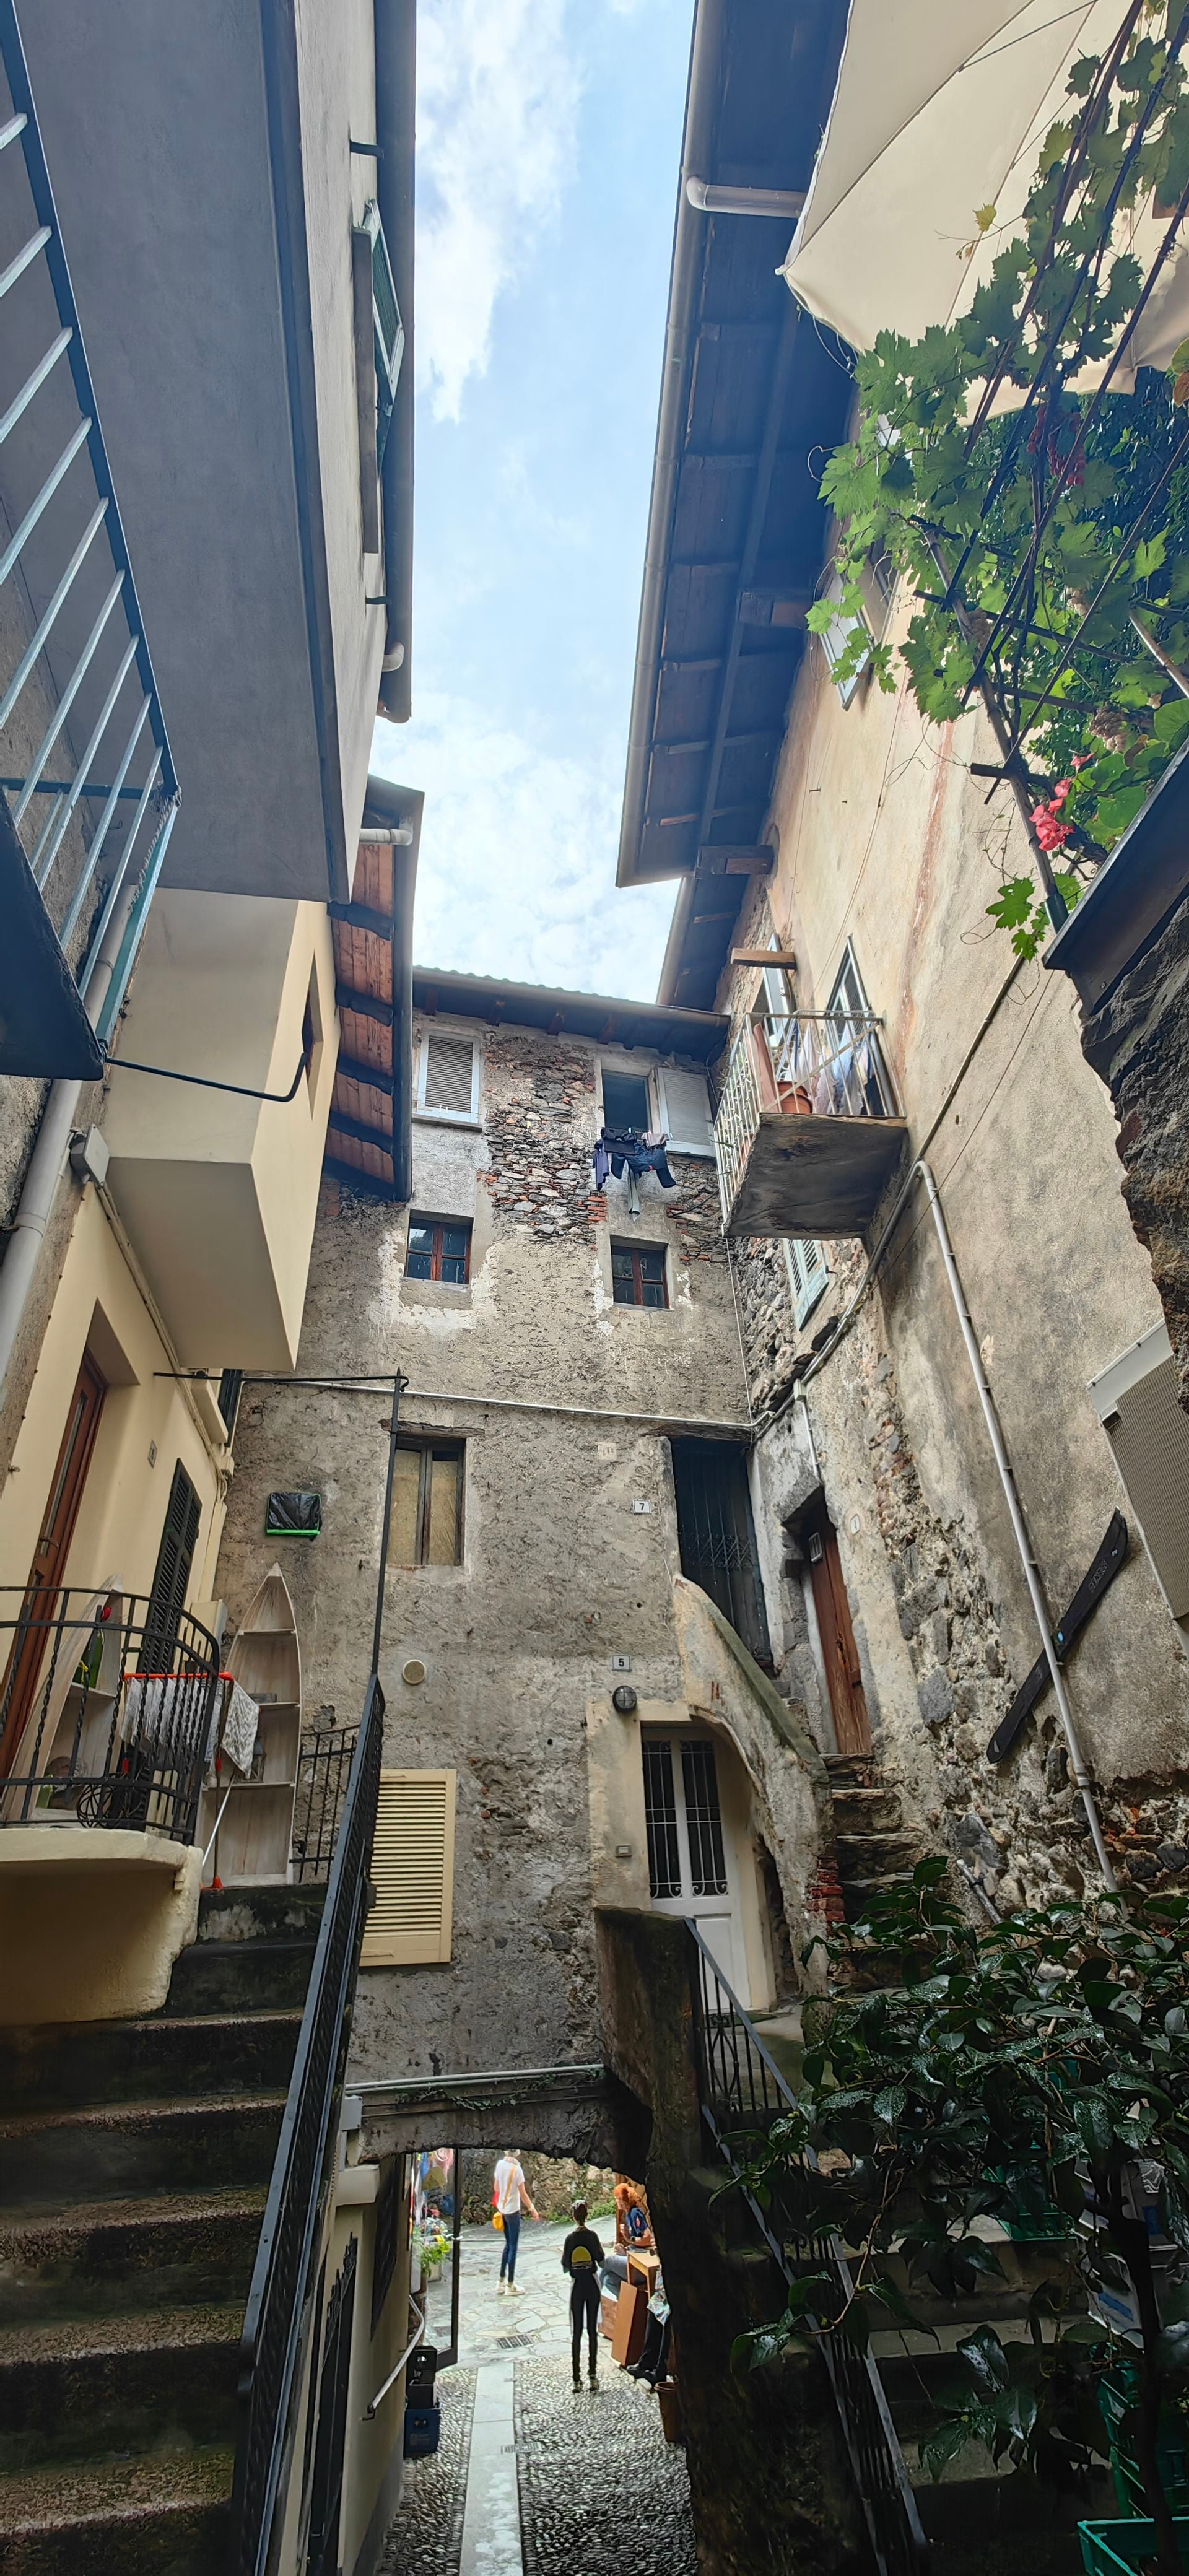 Al adentrarse por las calles de Isola Bella es fácil apreciar el estilo de vida de los poquísimos residentes, quienes se las arreglan en medio del reducido espacio. 